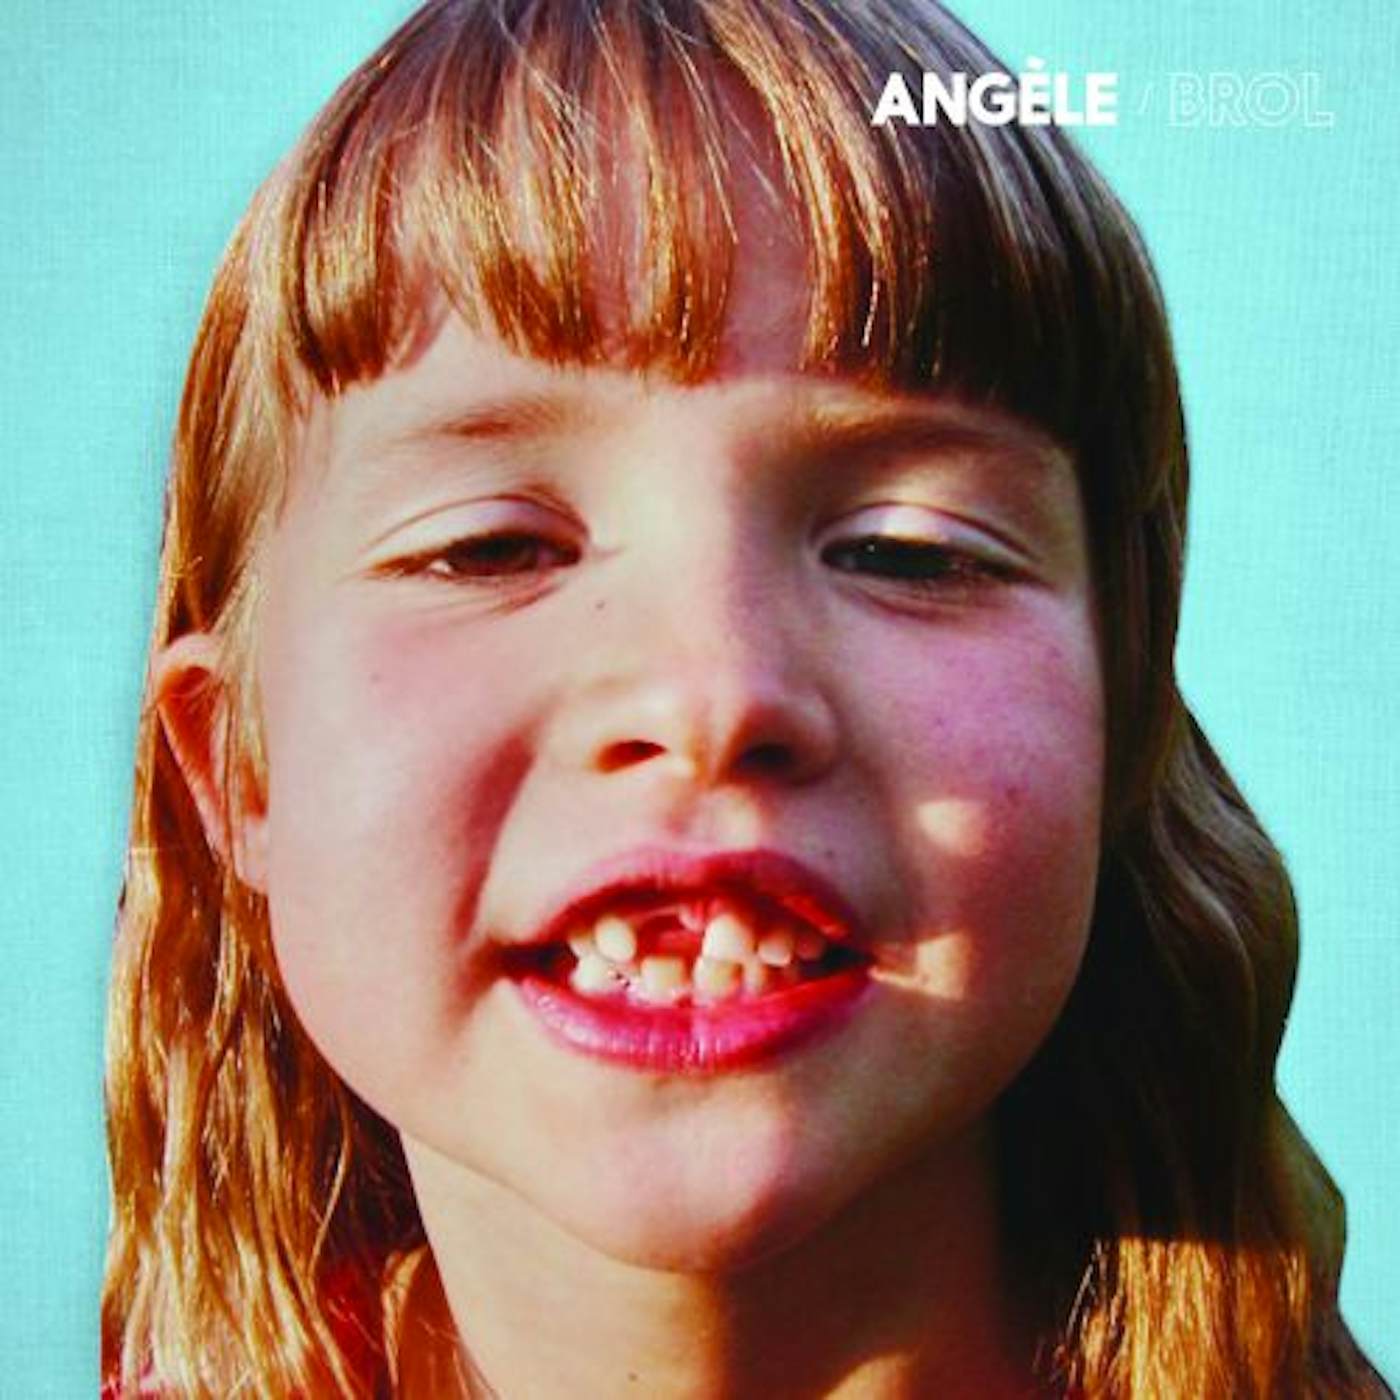 Angele Brol Vinyl Record